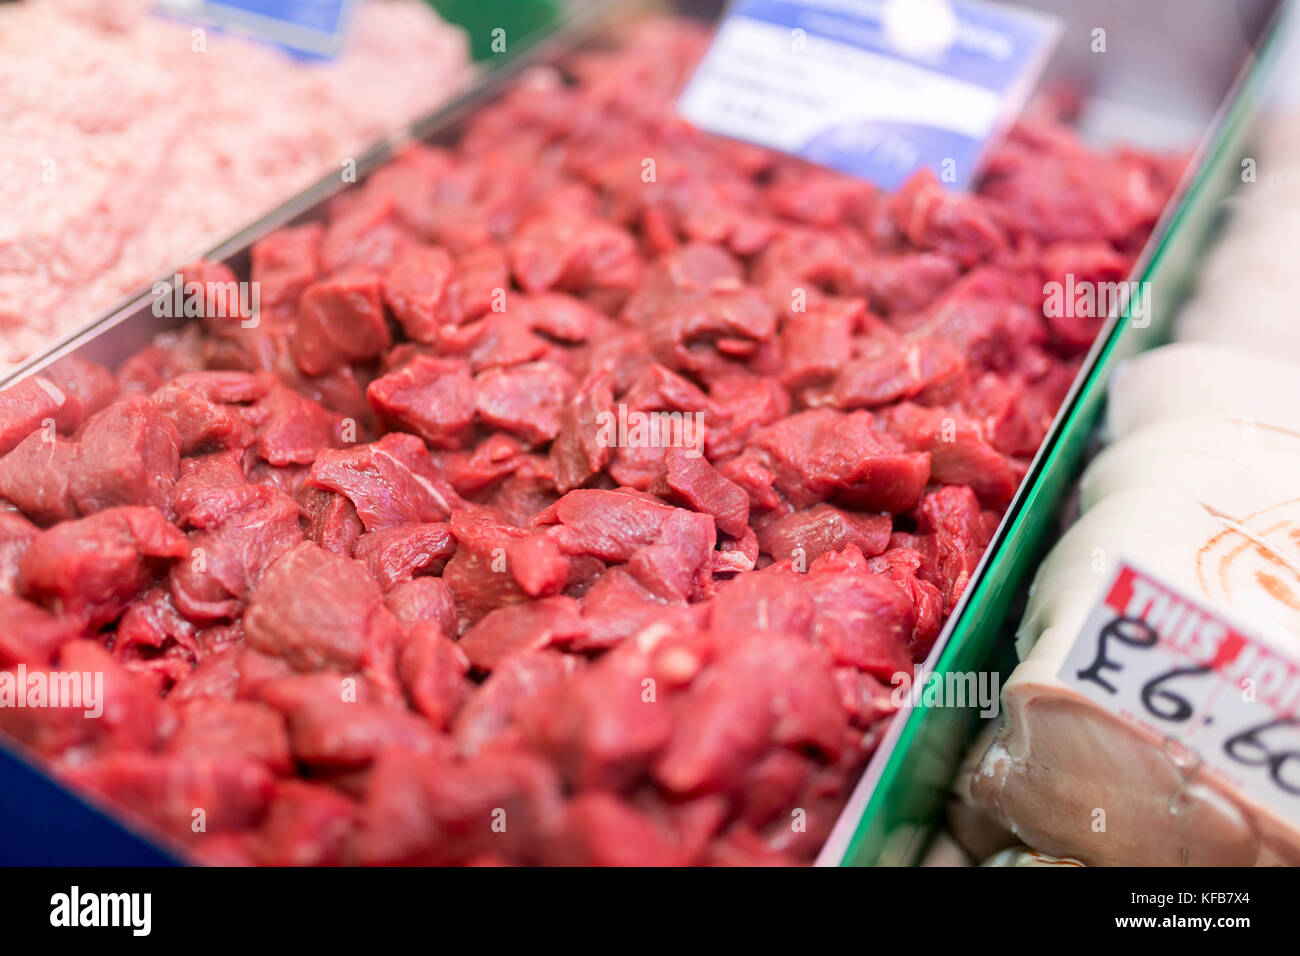 Plus de bac à ragoût de boeuf steak disposés sur un stand dans le Yorkshire, en Angleterre dans le royaume Unired Banque D'Images